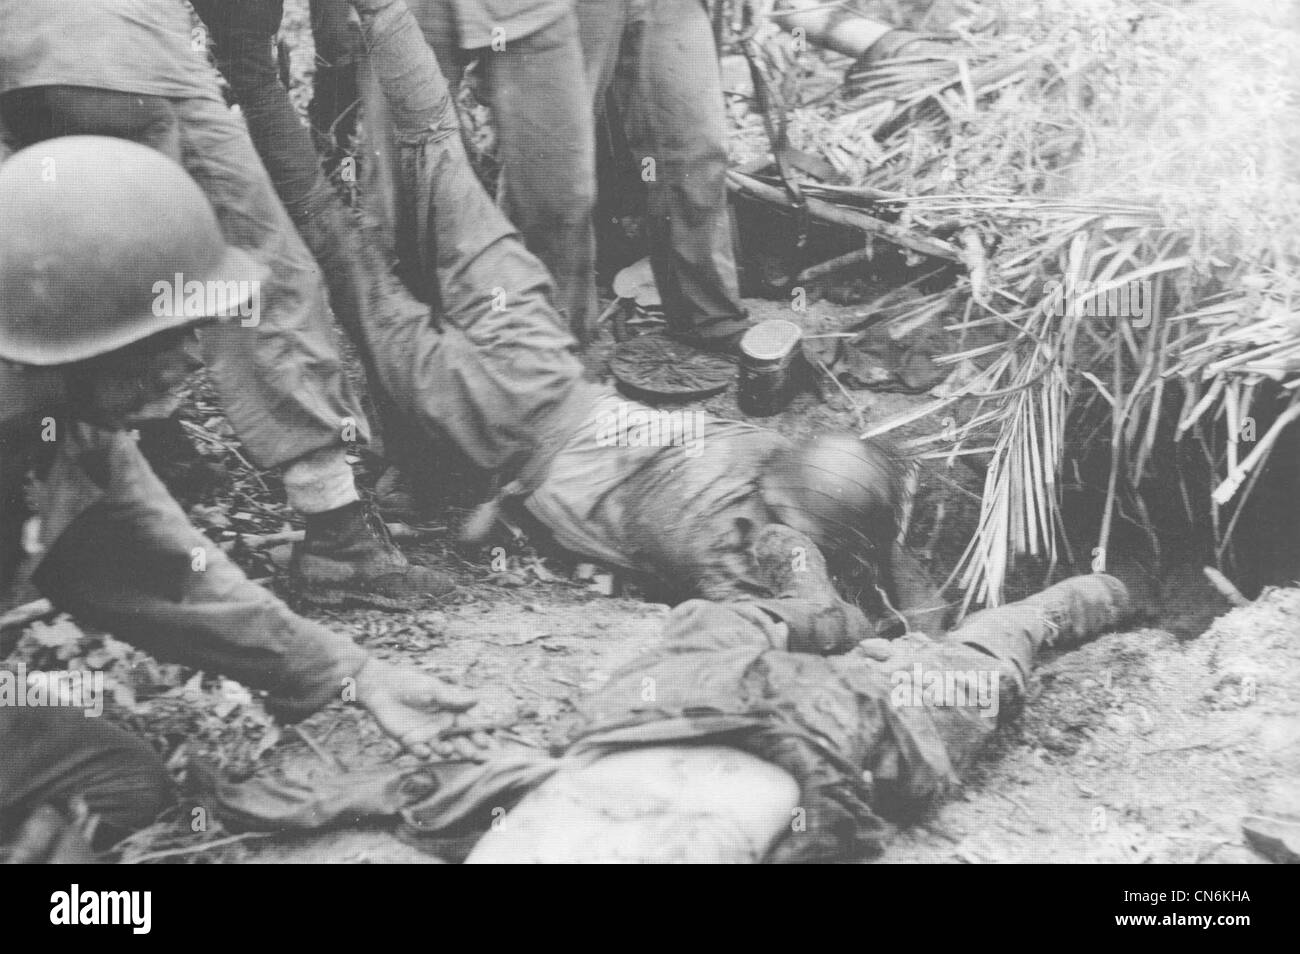 Les Marines américains faites glisser les soldats japonais morts de leur bunker, près de Point Cruz à Guadalcanal en novembre 1942. Banque D'Images